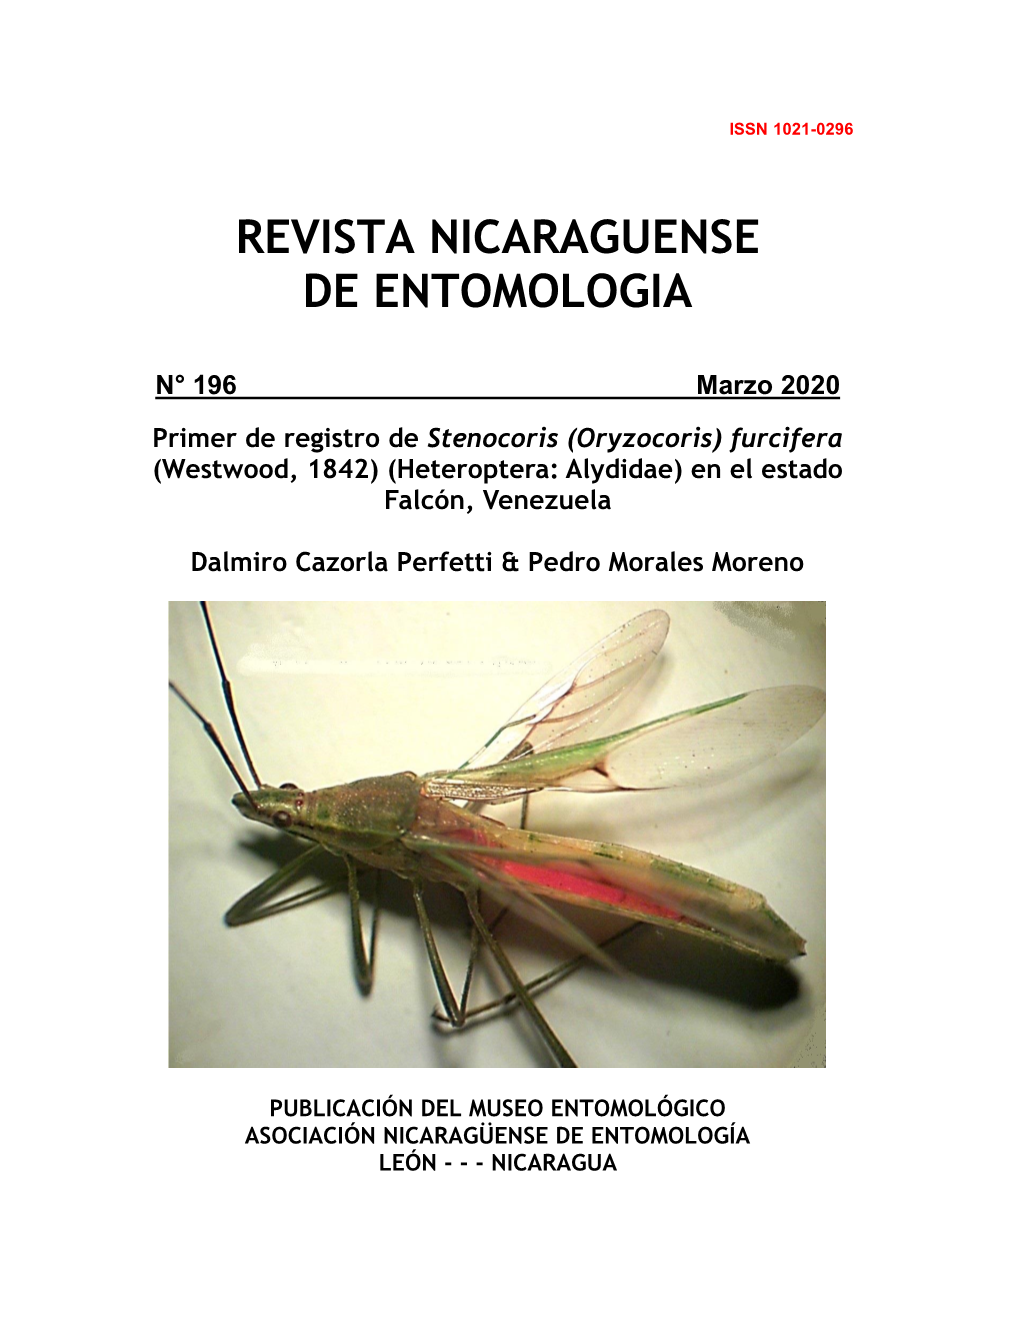 Furcifera (Westwood, 1842) (Heteroptera: Alydidae) En El Estado Falcón, Venezuela